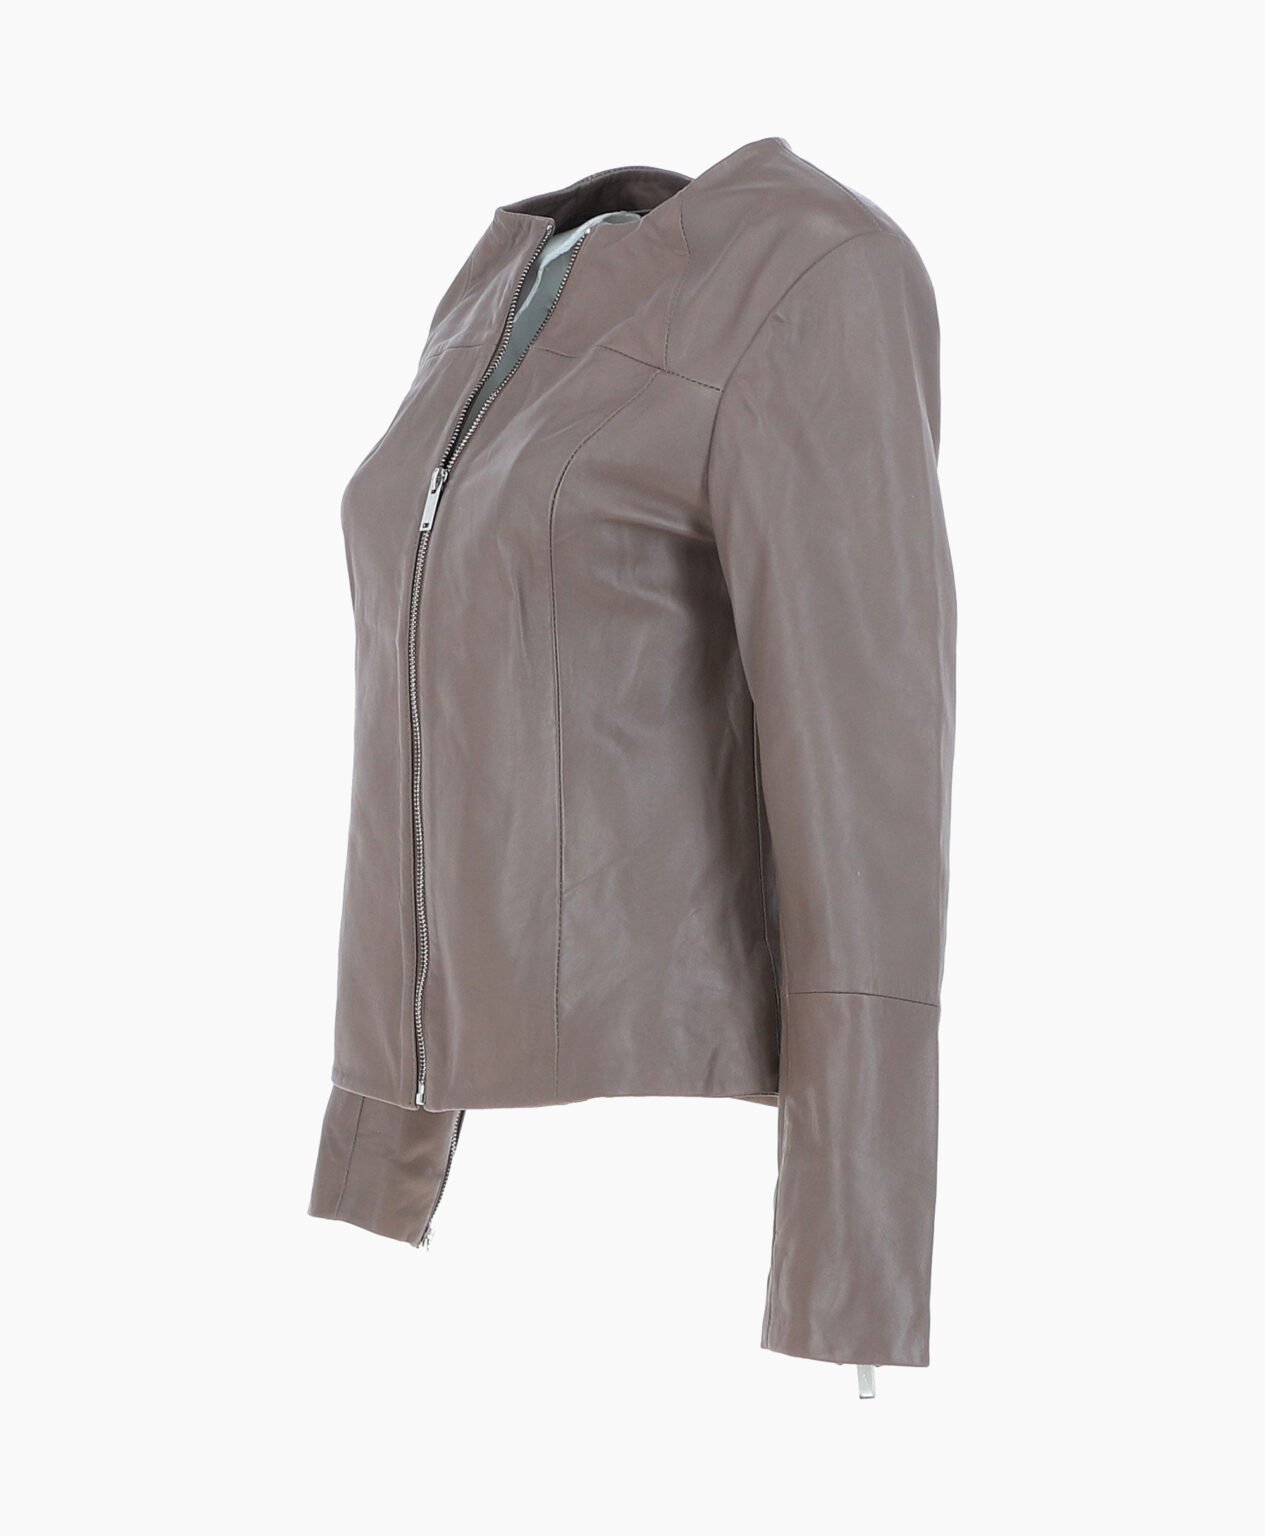 vogue-jacket-leather-fashion-jacket-gray-elizabeth-image201